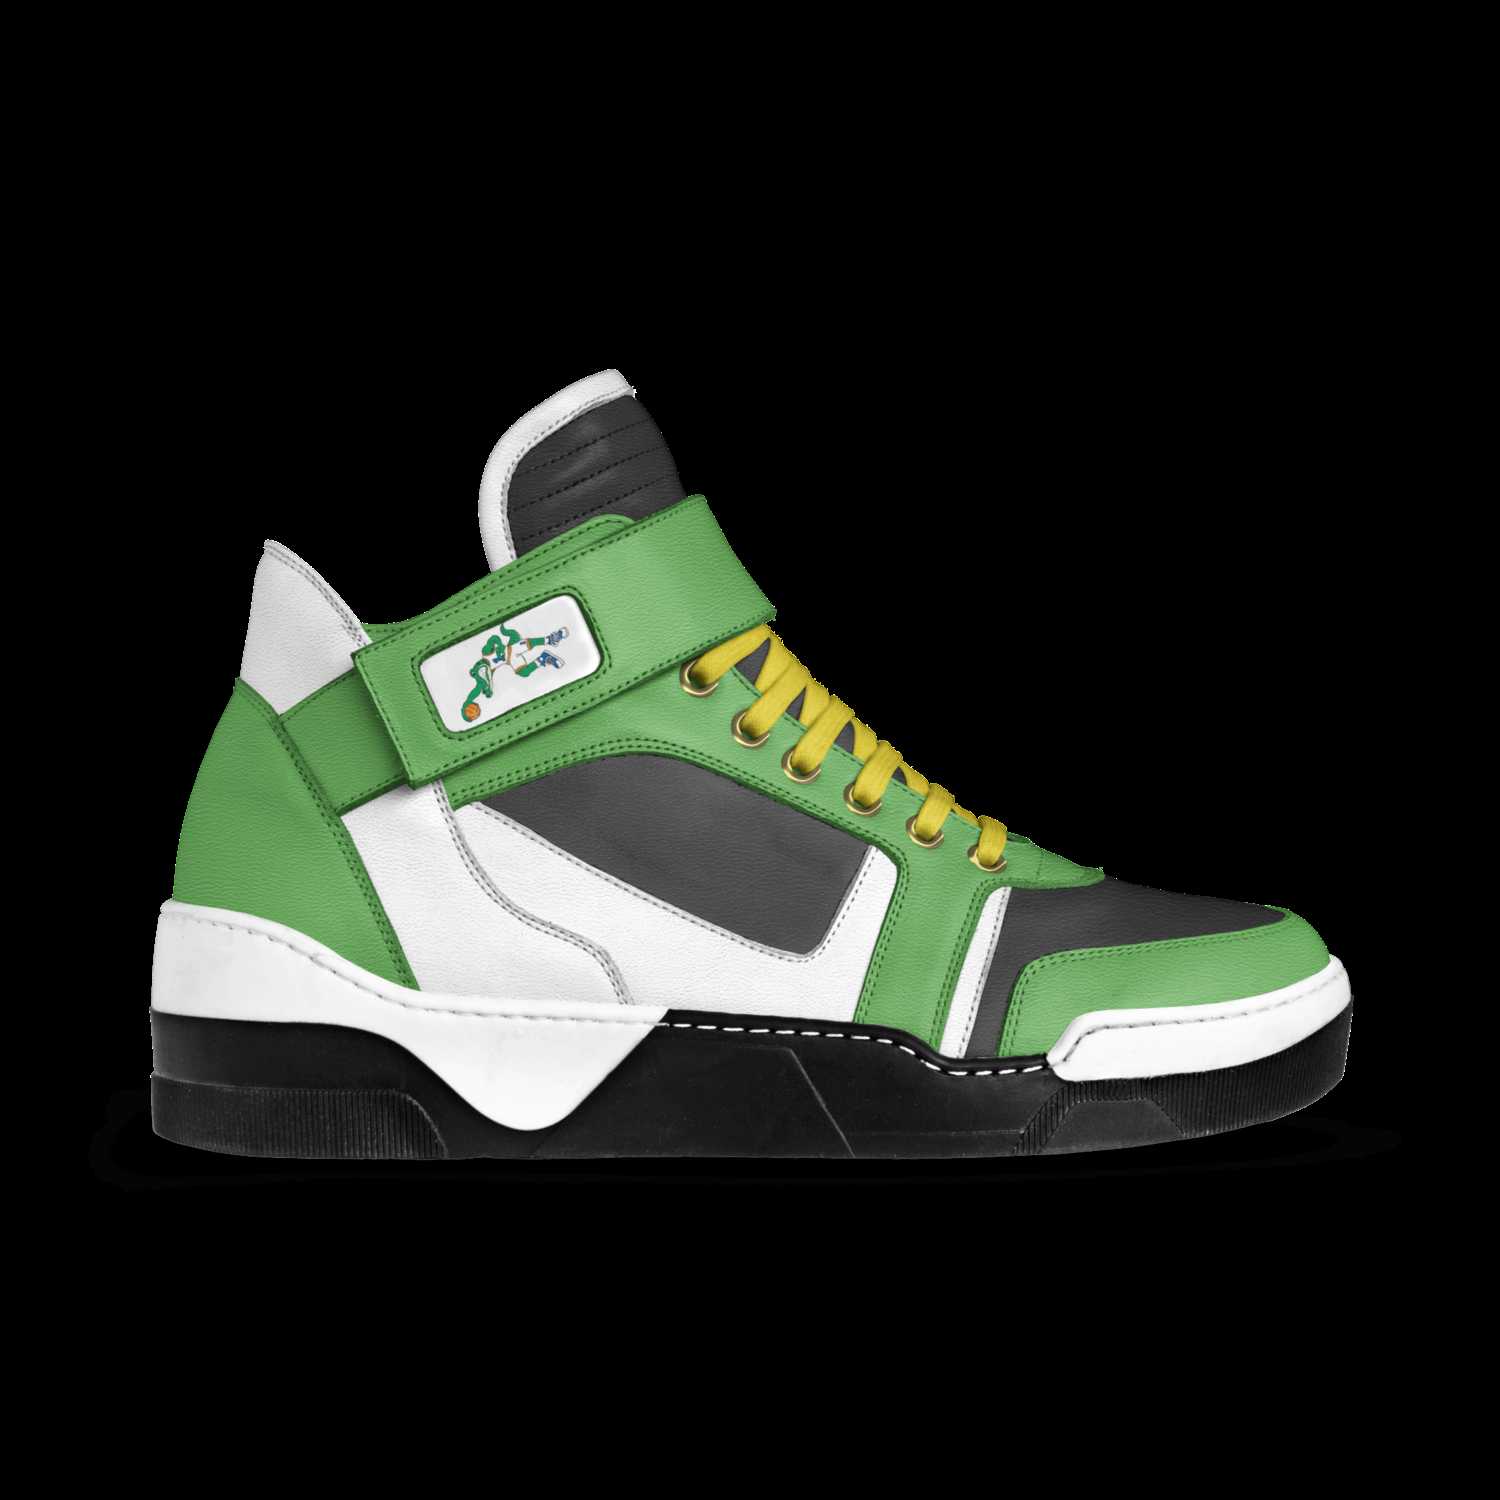 Air Croc 1 | A Custom Shoe concept by Bob